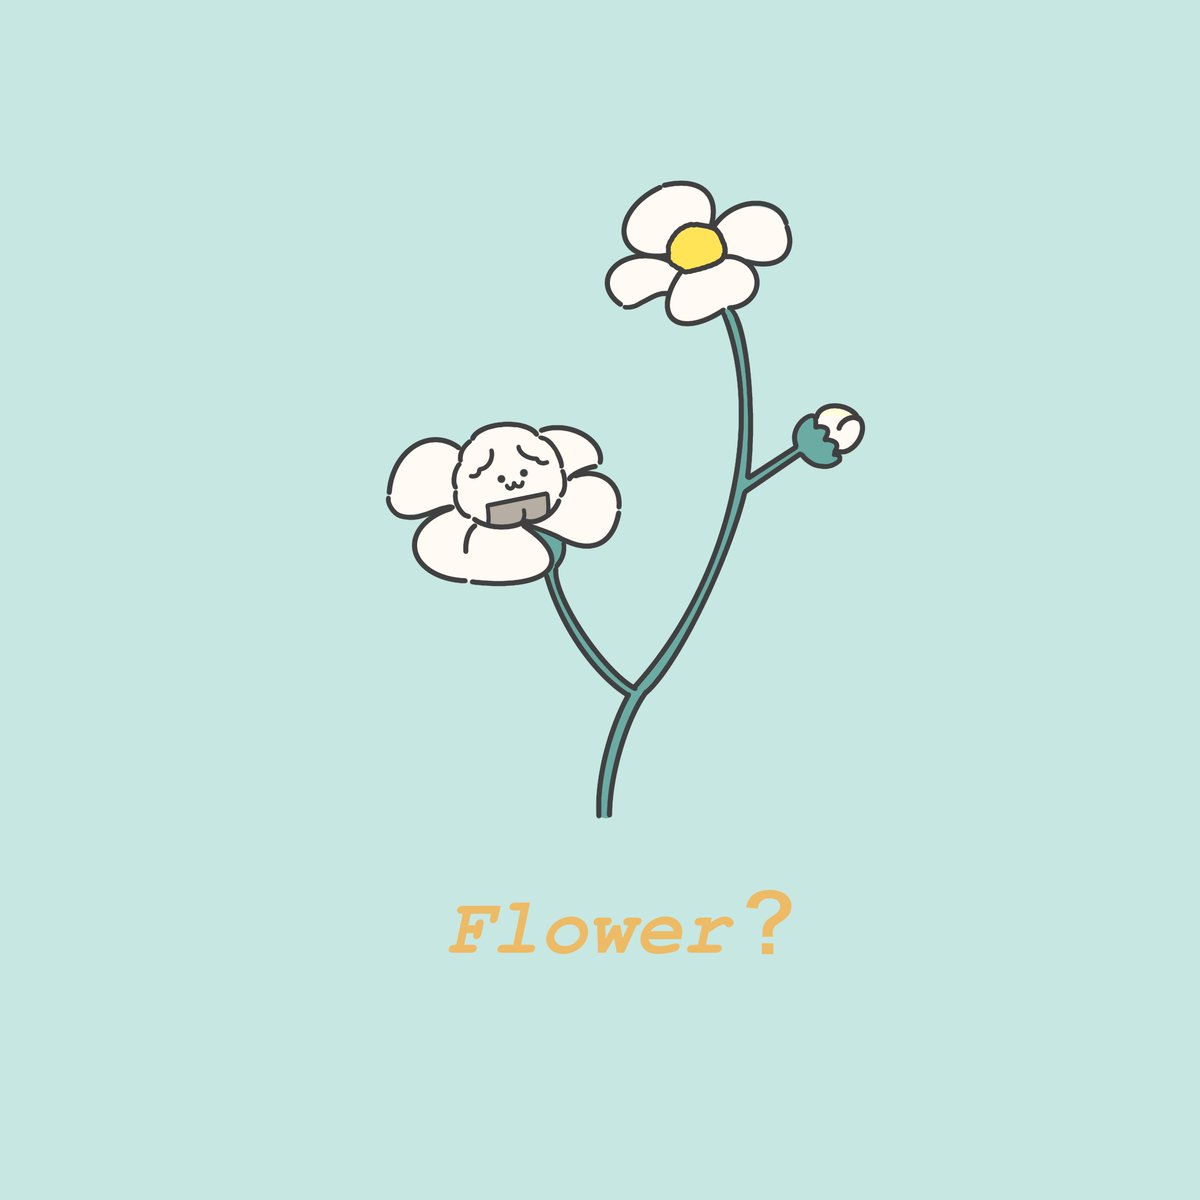 お花 おにぎりわんこ ゆるい ゆるいキャラクター 花 おにぎりわんこのイラスト